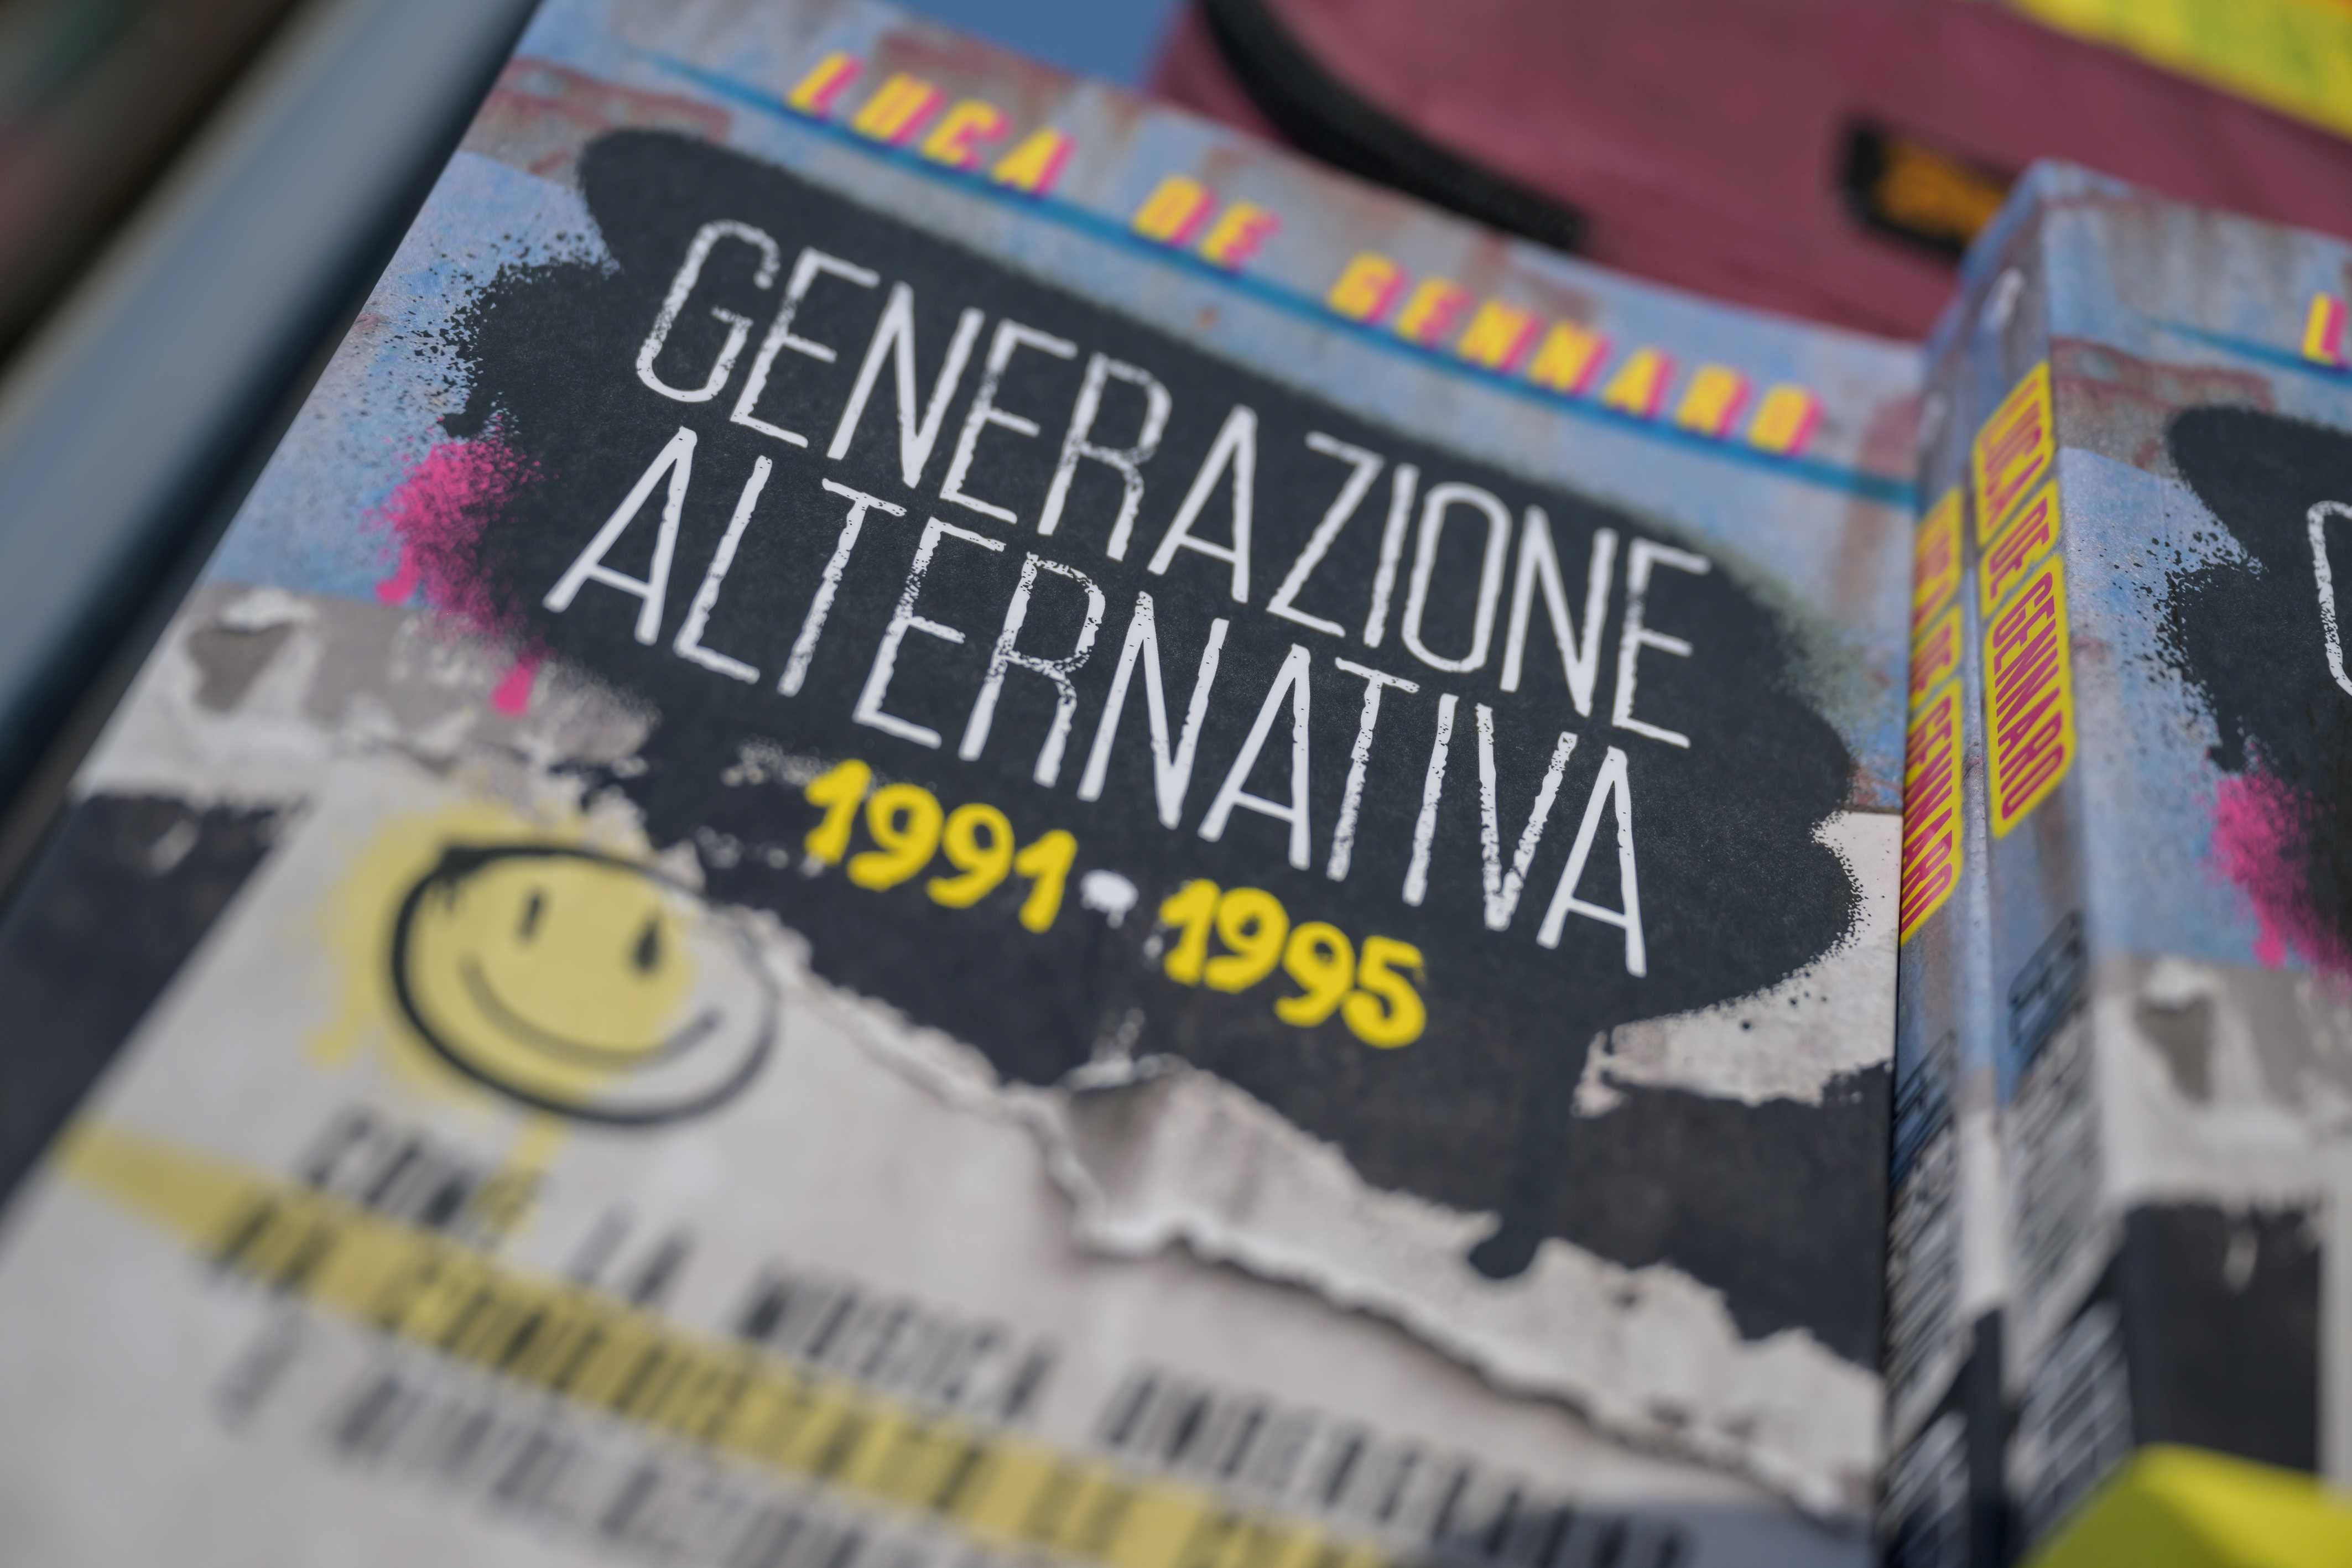 Generazione Alternativa Luca De Gennaro